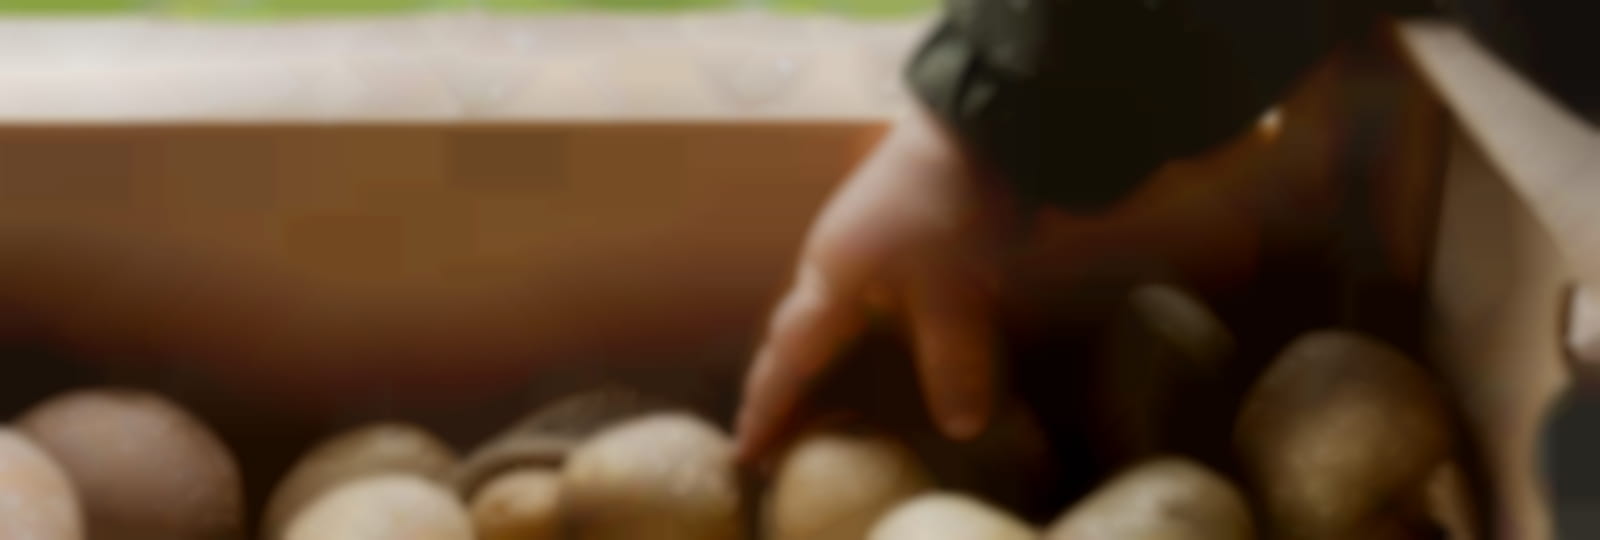 close-up-kid-hand-touching-potato